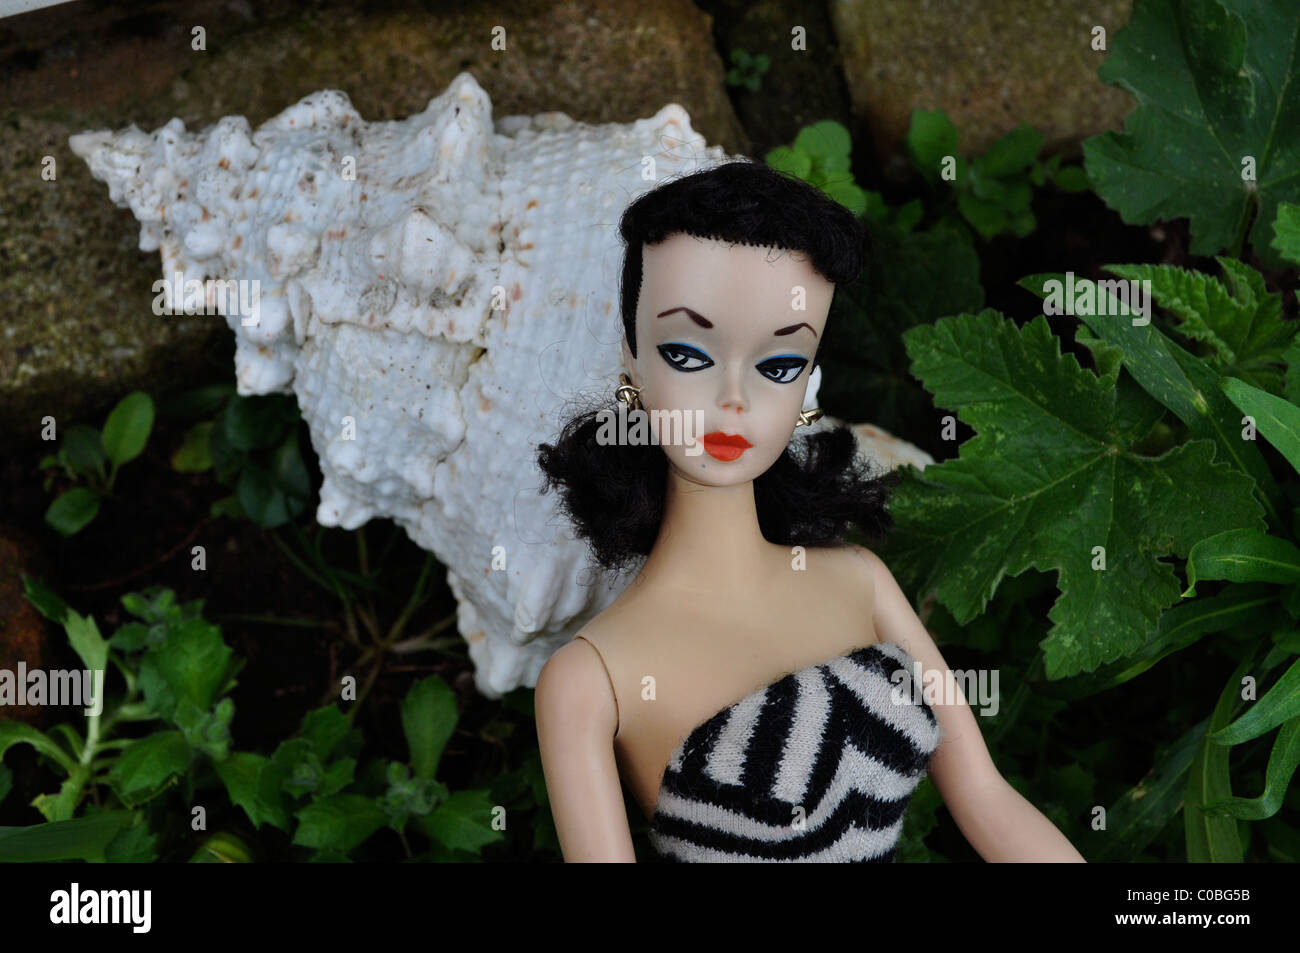 Première poupée Barbie faite en 1959 au Japon, # 1 poupée Barbie avec des sourcils arqués, yeux noir et blanc peinture et maillot de contrepartie. Banque D'Images